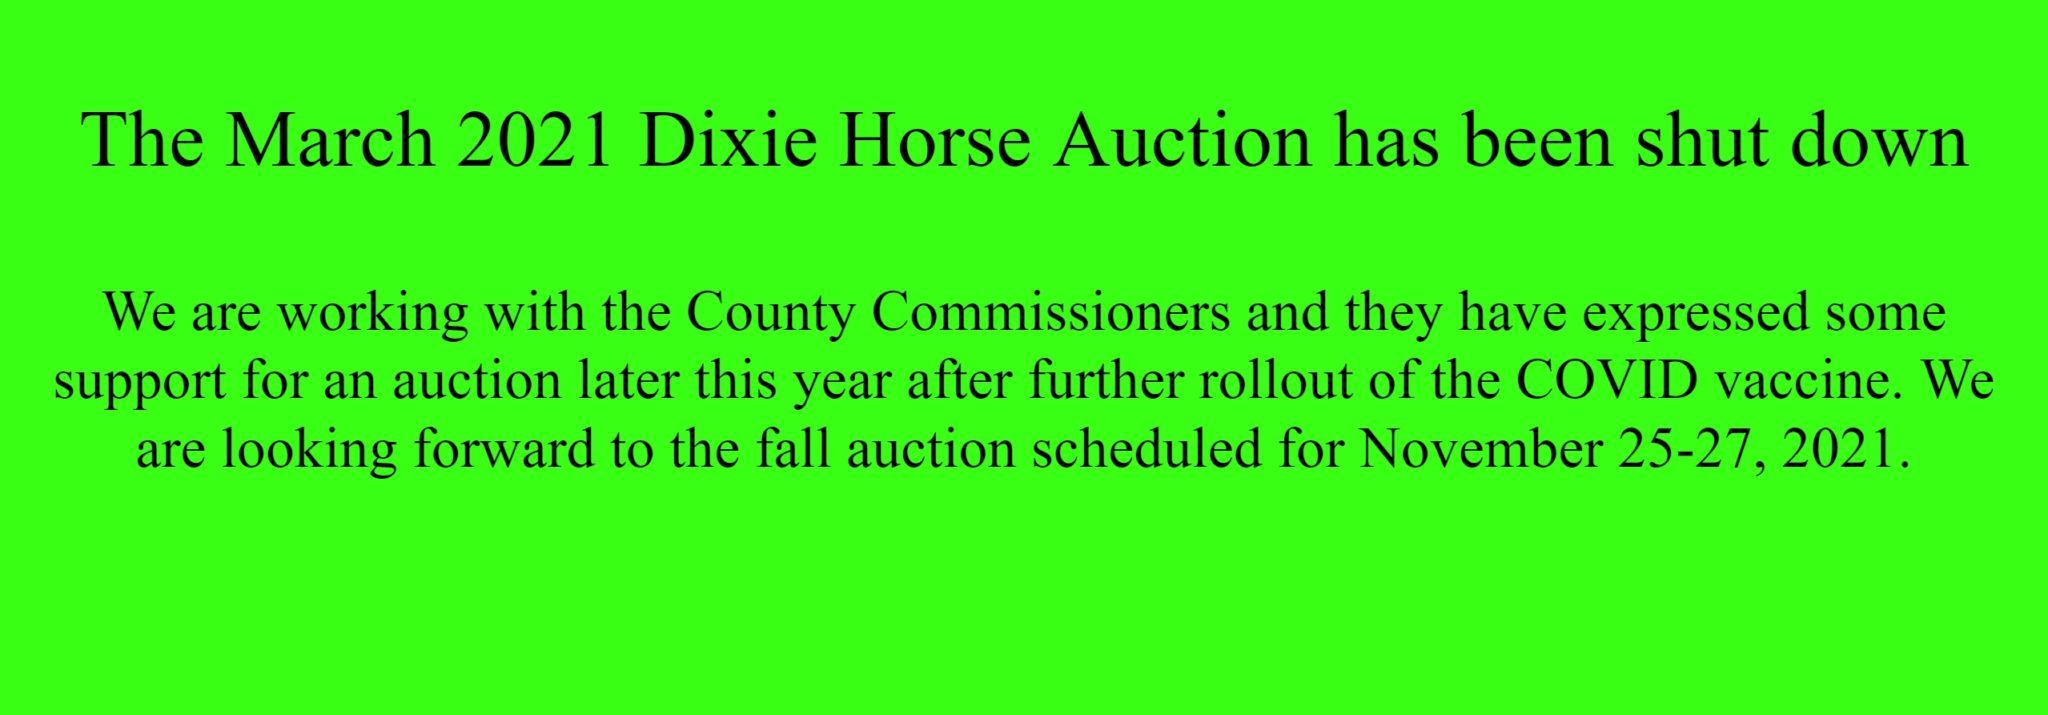 Dixie Horse Auction Ltd.